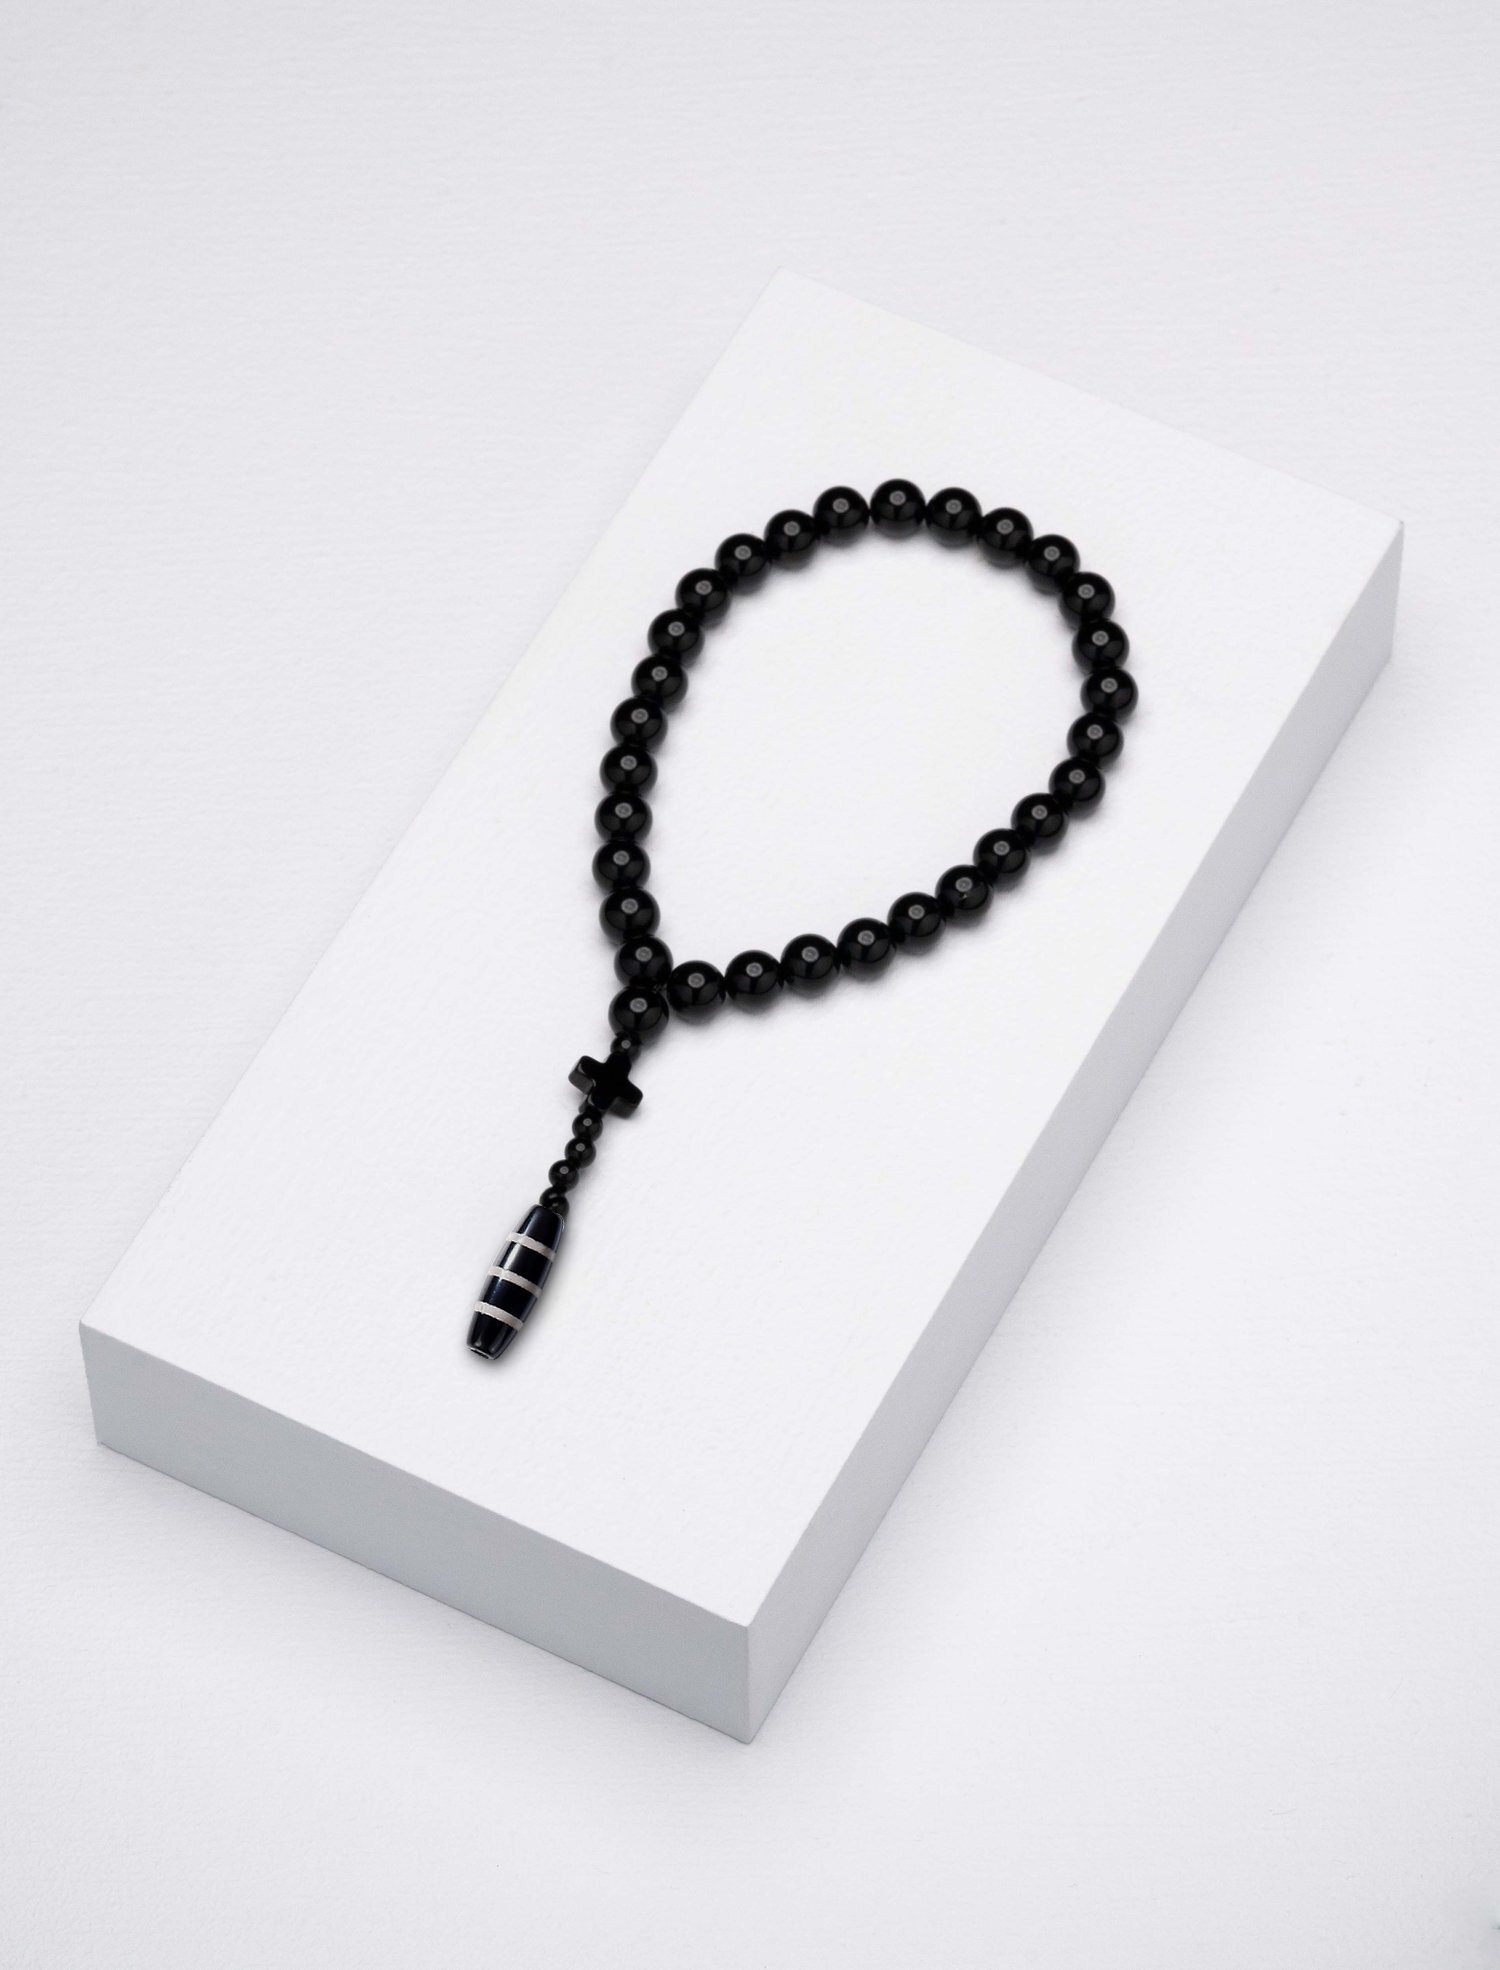 Caim Worry by Beads designed — Beads Zonfrillo - Worry Caim Jock